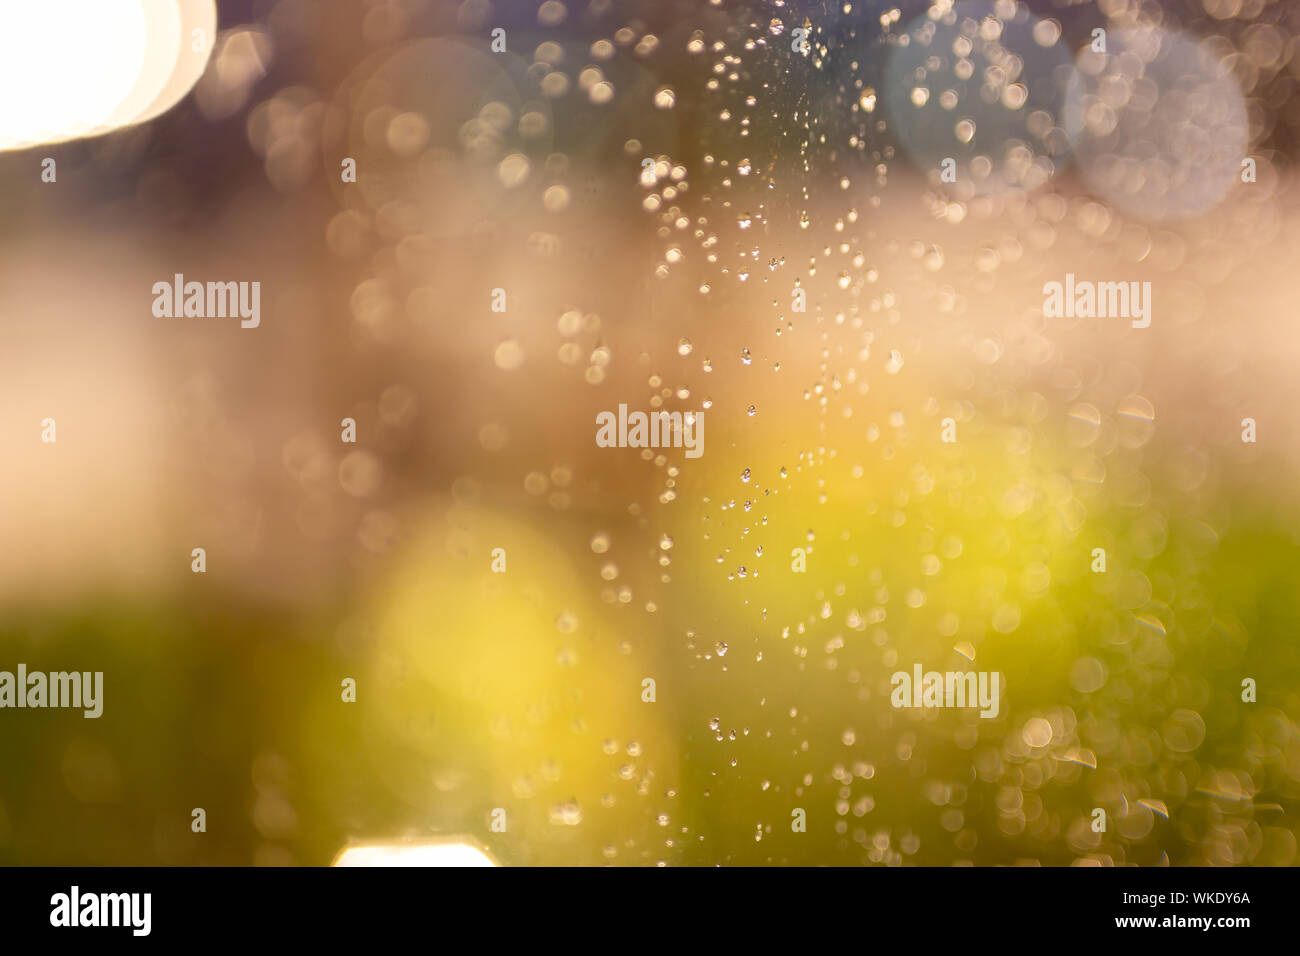 Acqua delle gocce di pioggia sulla finestra con vetro colorato bokeh di illuminazione in background. Foto Stock